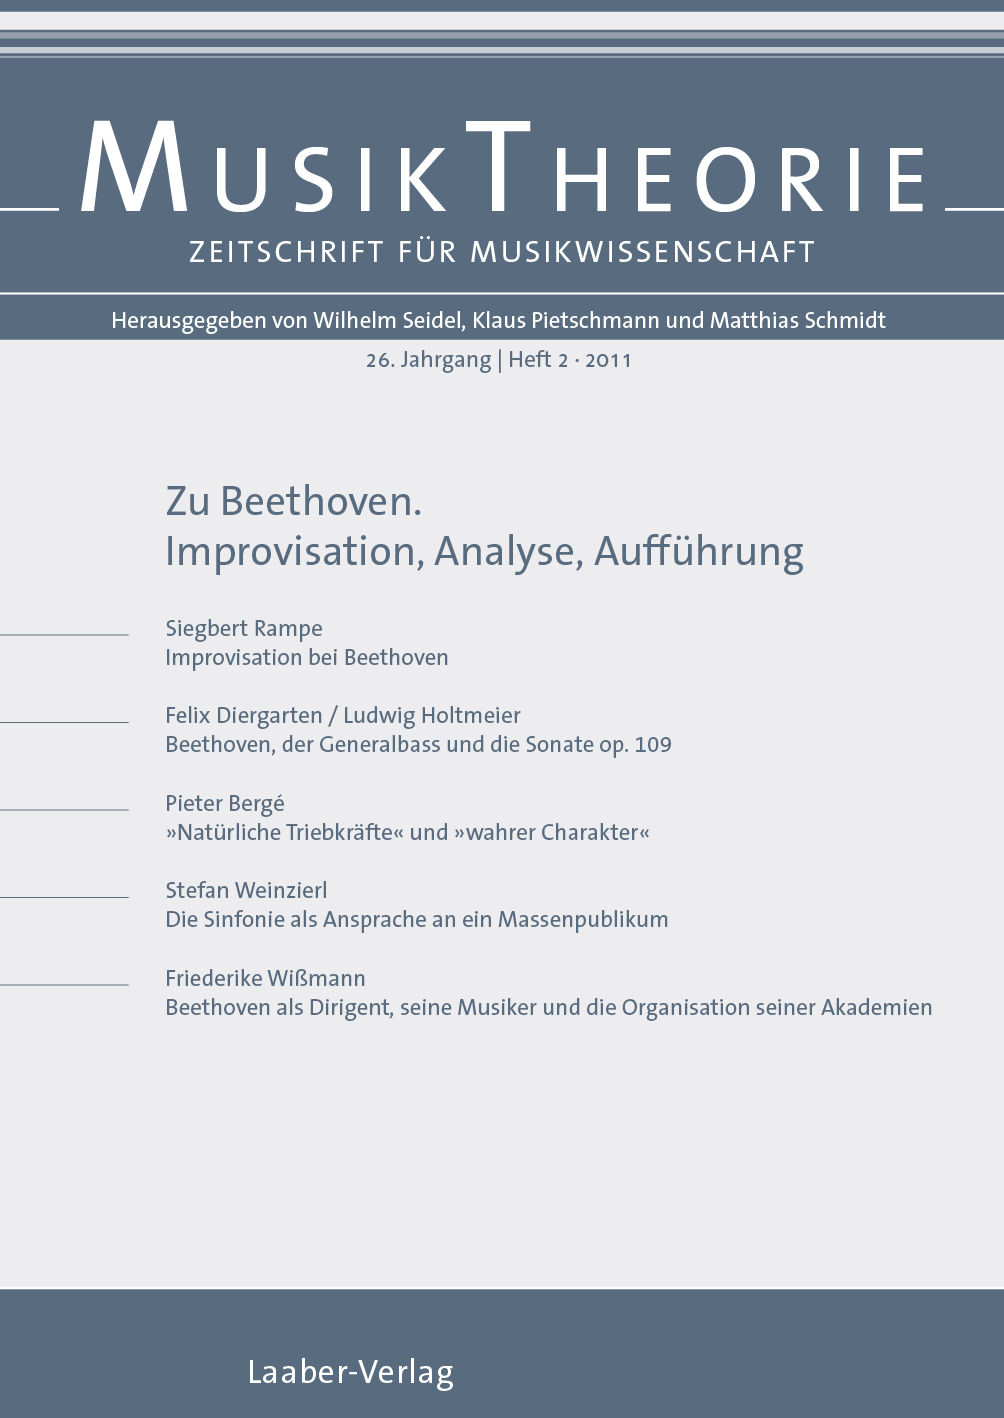 Musiktheorie Heft 2/2011